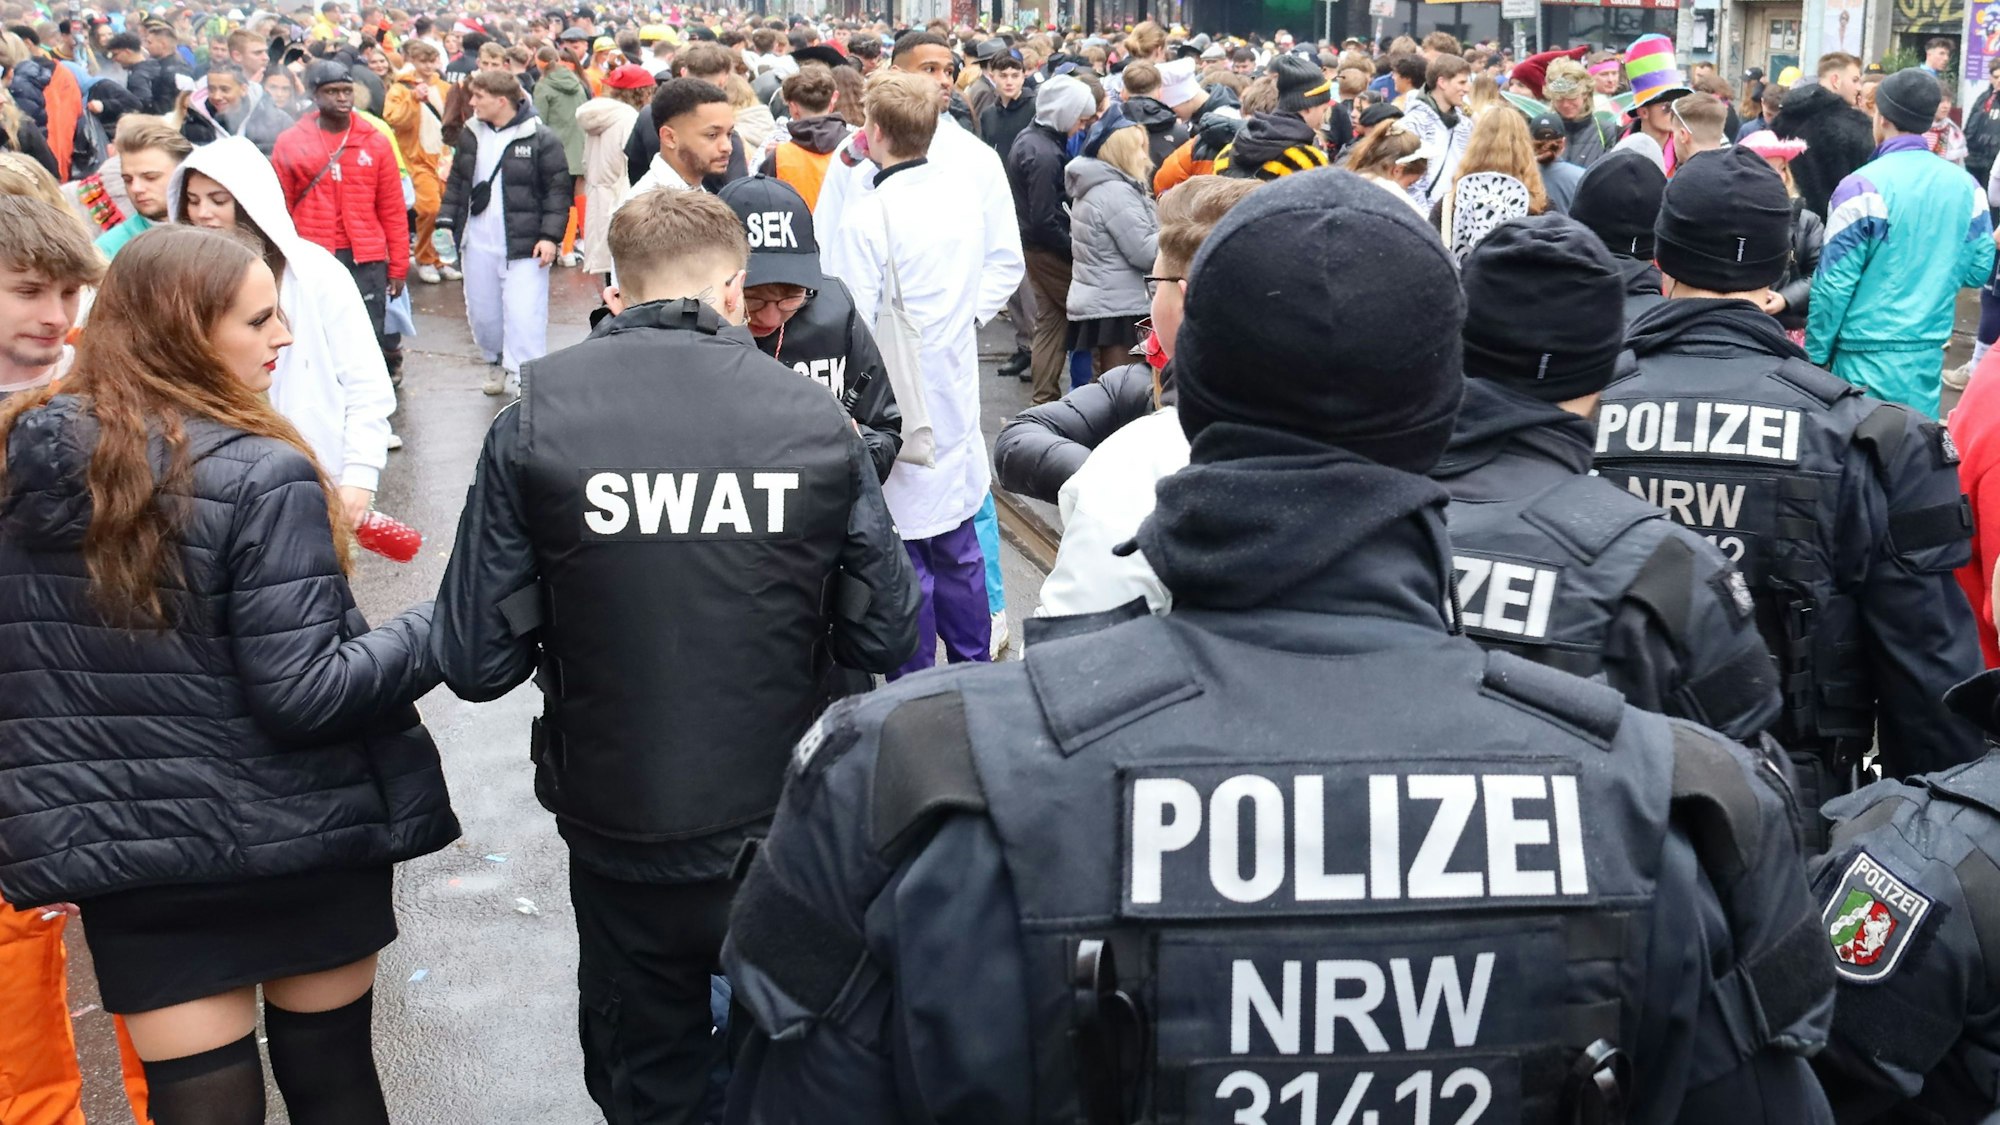 Wer ist hier der echte Polizist? Als „Swat“-Team verkleidete Jecke stehen hinter Polizeibeamten in Uniform.